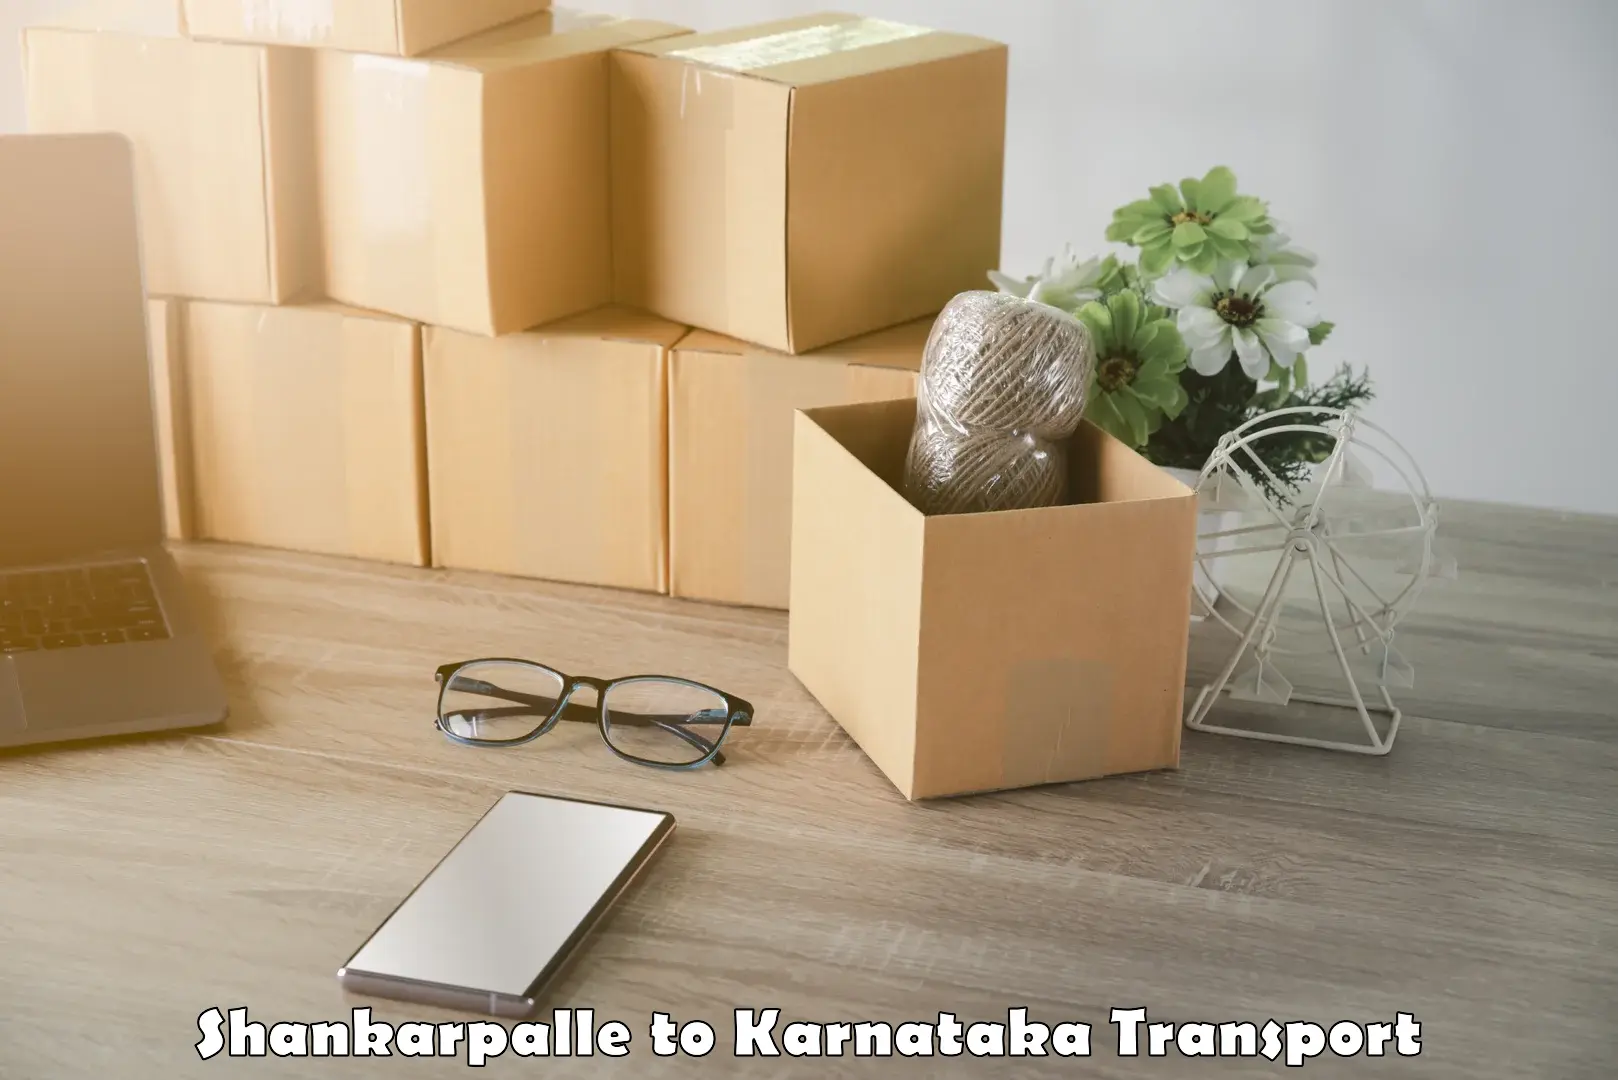 Cargo transport services in Shankarpalle to Karnataka